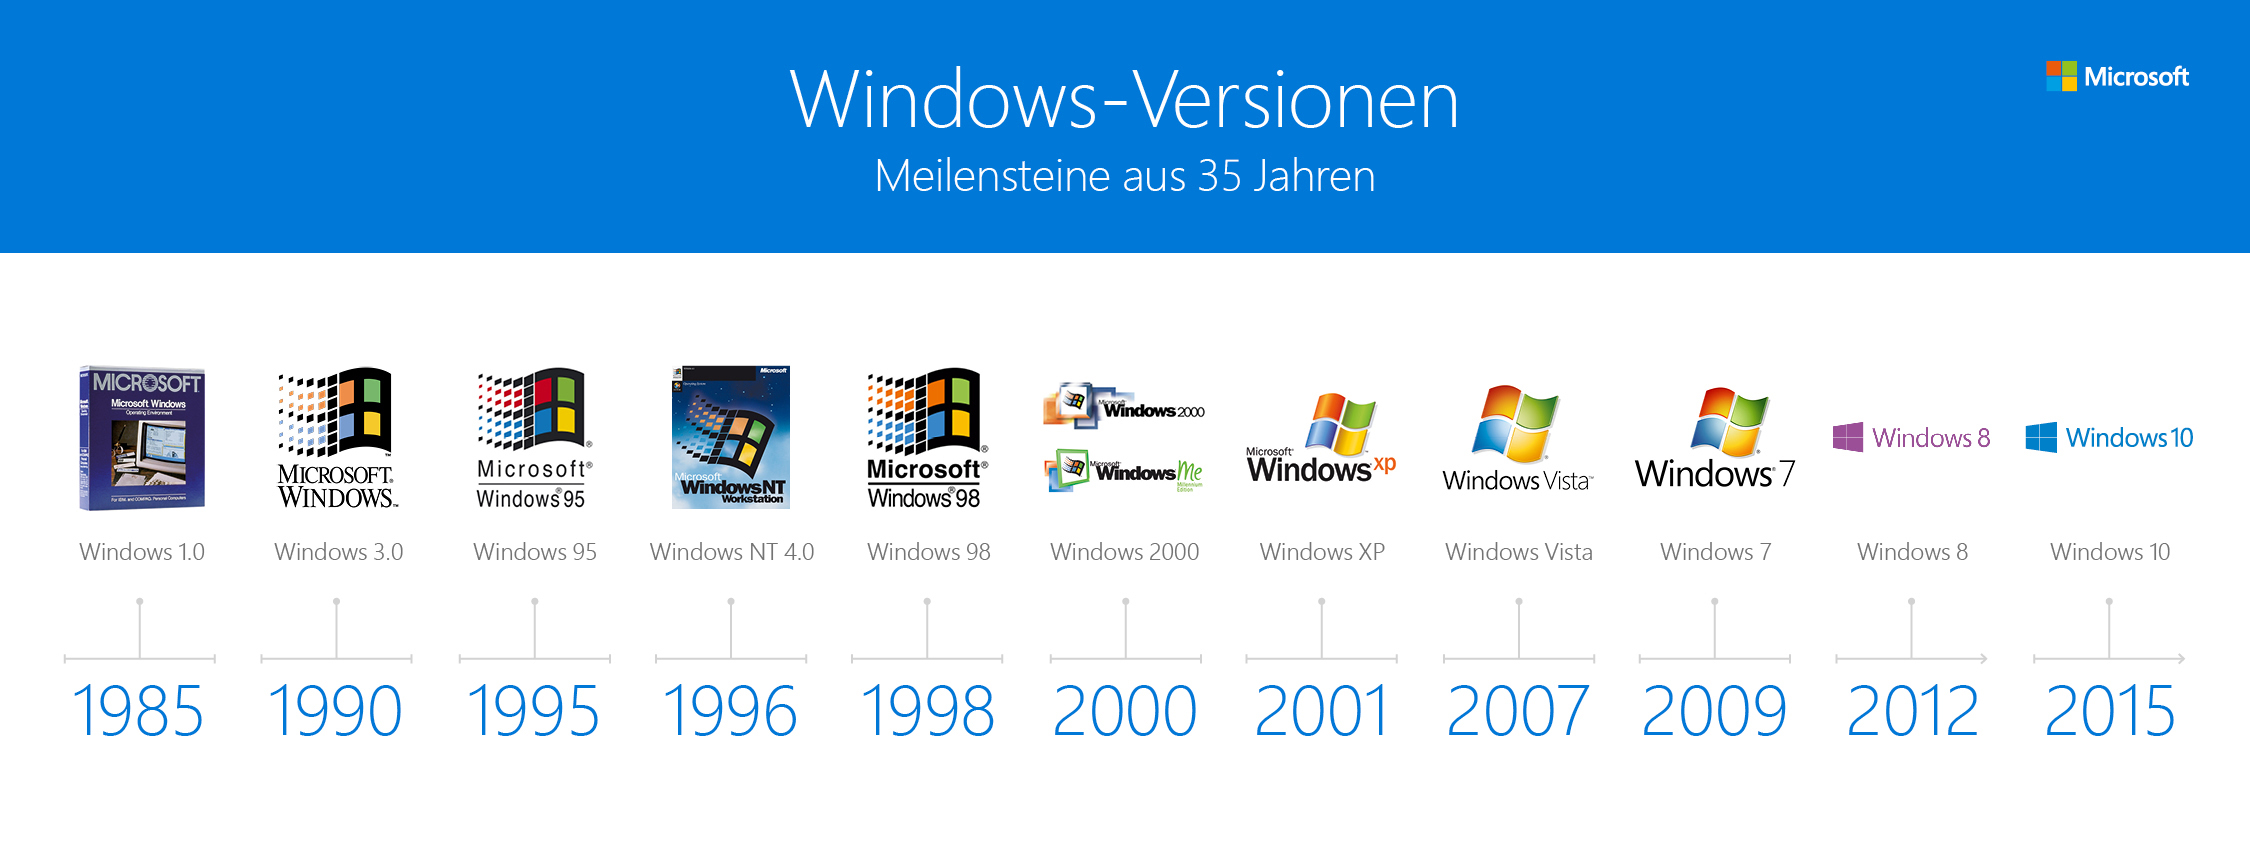 Когда появился виндовс. Версии ОС виндовс. Эволюция ОС Windows. Поколения Windows. Версии виндовс по годам.